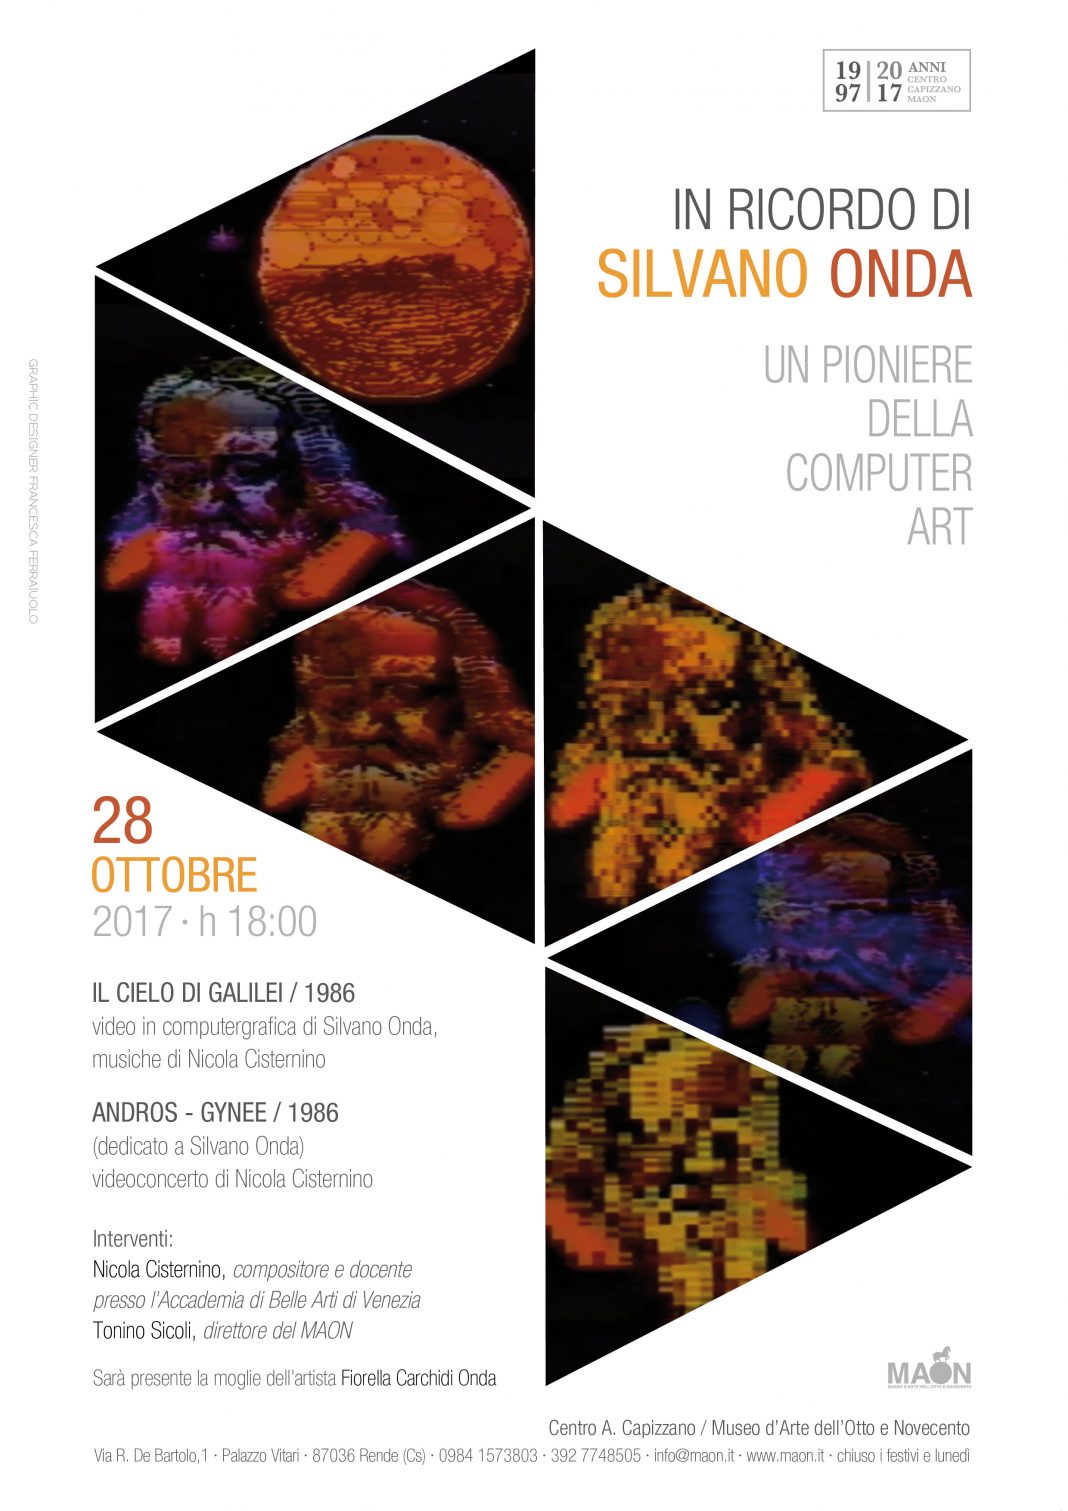 In ricordo di Silvano Onda. Un pioniere della computer arthttps://www.exibart.com/repository/media/eventi/2017/10/in-ricordo-di-silvano-onda.-un-pioniere-della-computer-art-1068x1511.jpg